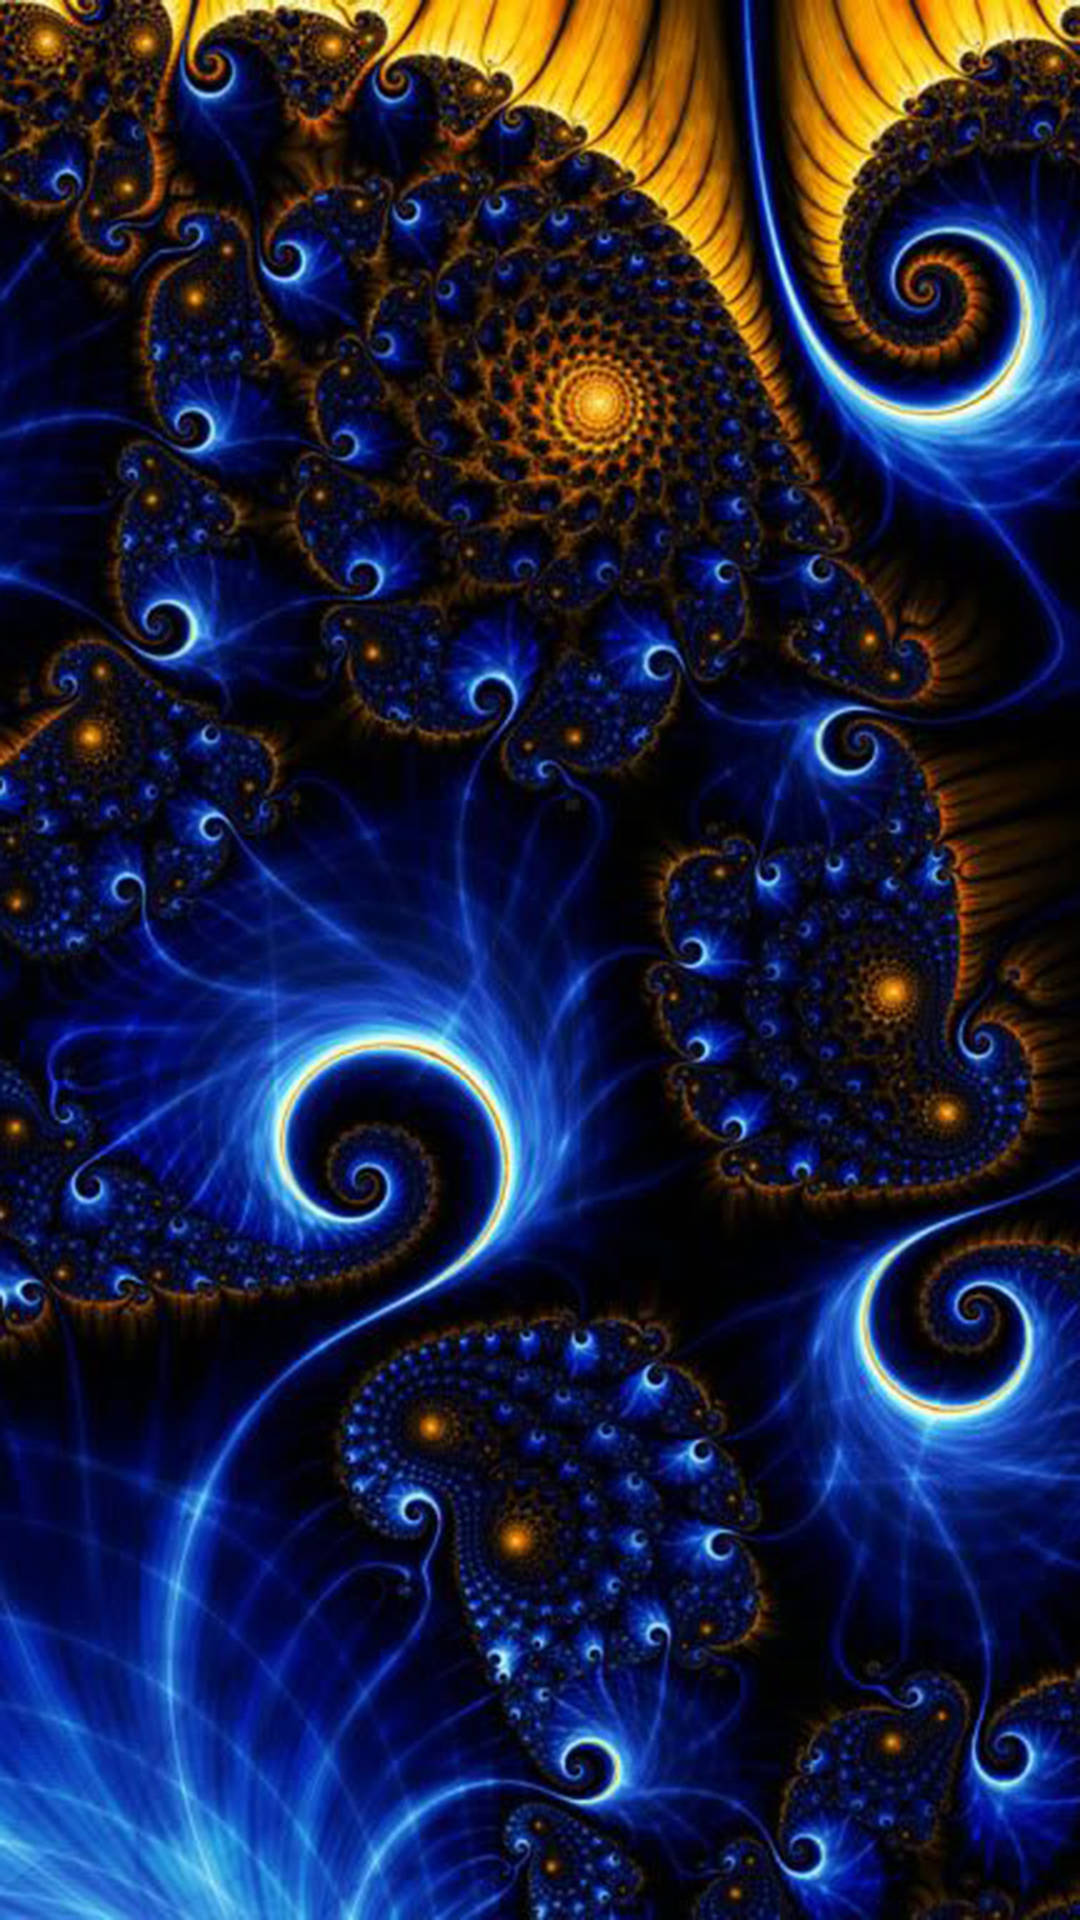 Psychedelic Peacock Spirals iPhone Wallpaper Wallpaper